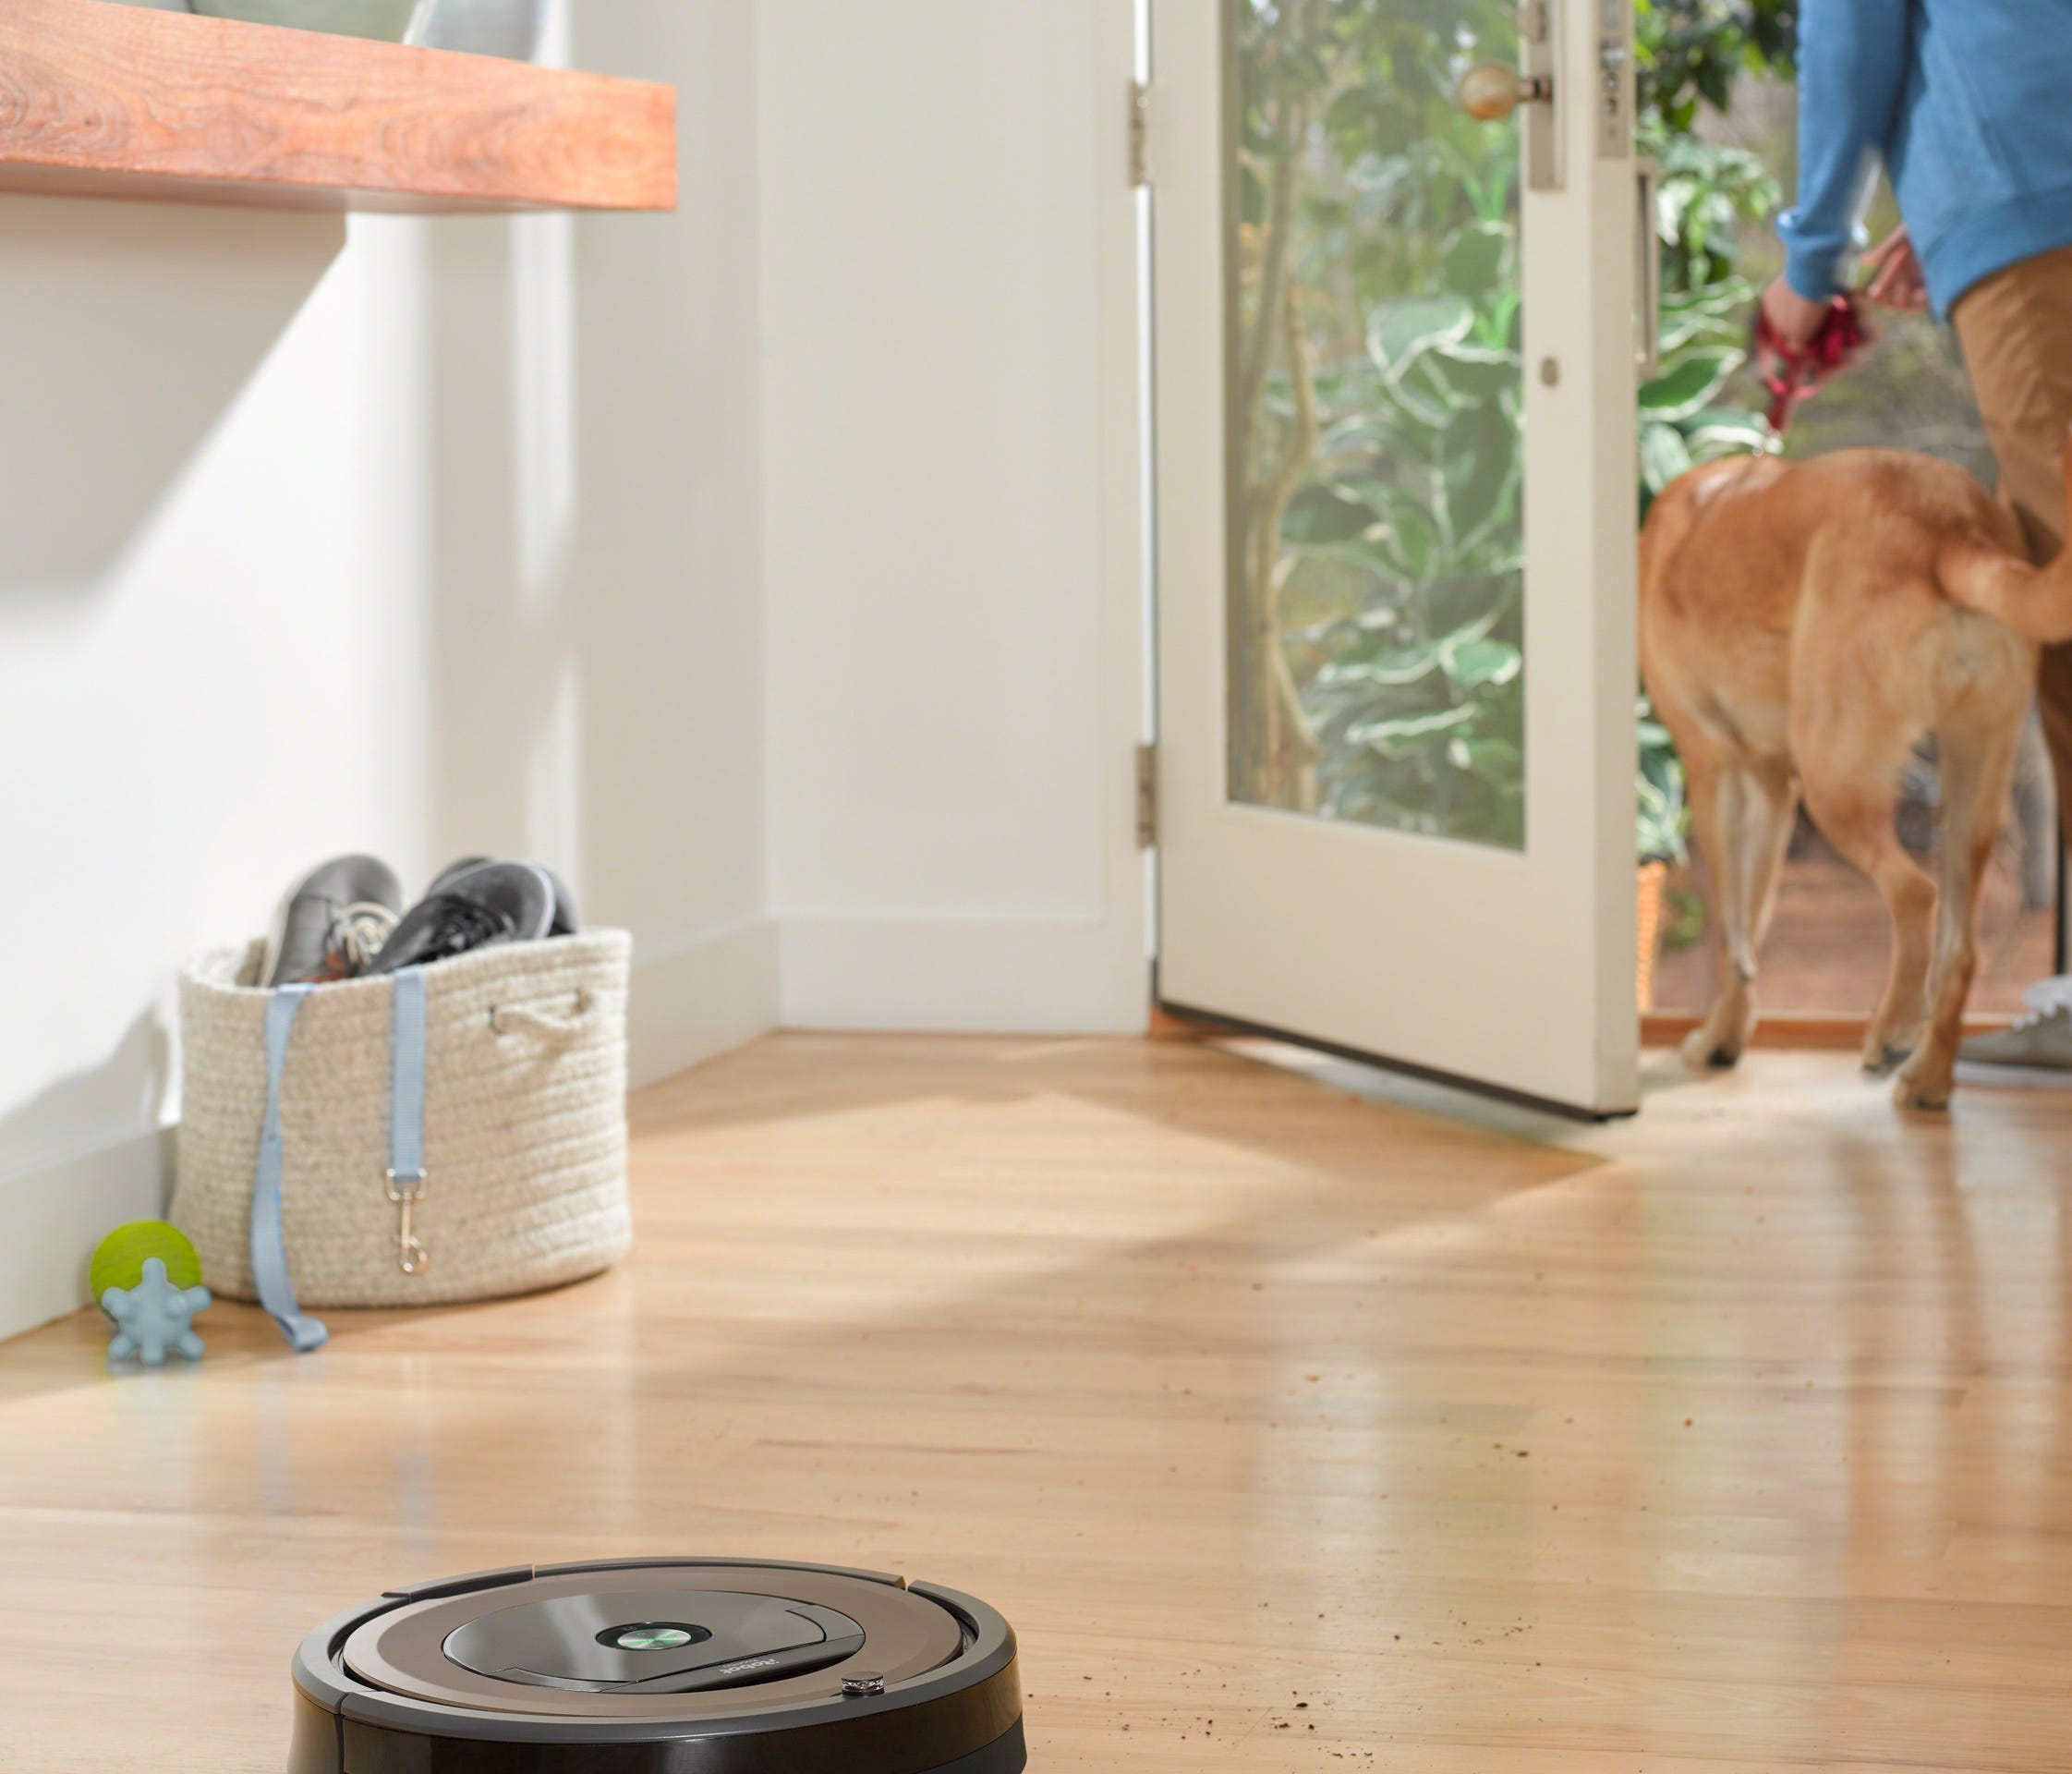 The iRobot Roomba 890 allows for remote control through Amazon Alexa or a smartphone app.